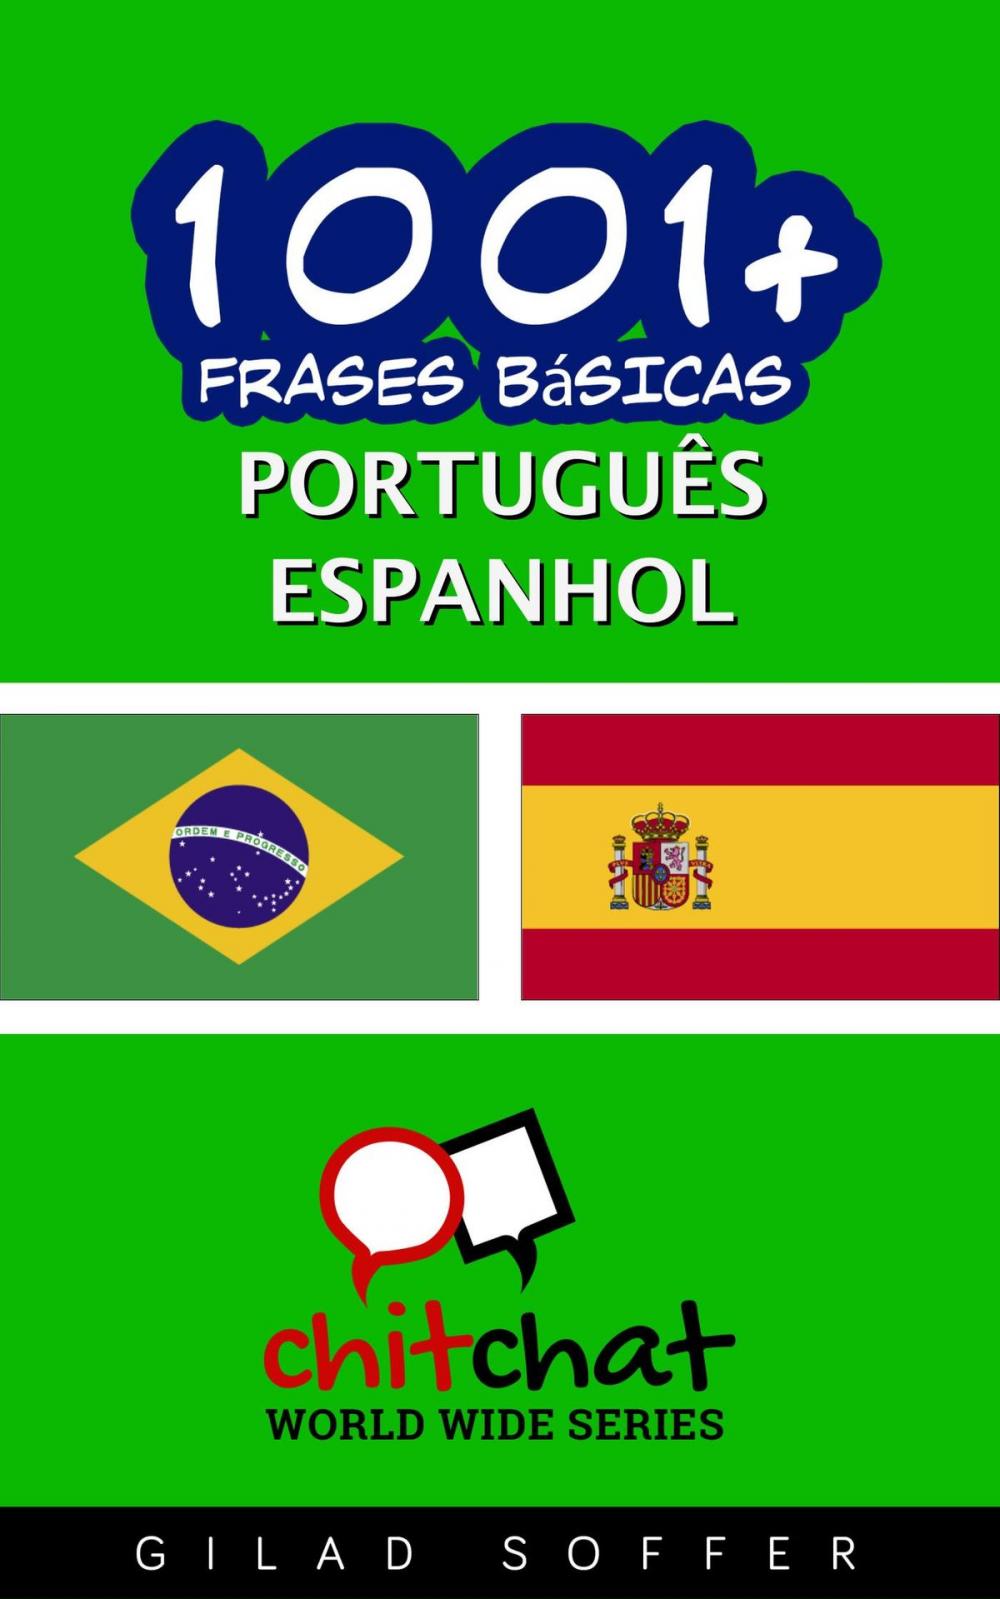 Big bigCover of 1001+ Frases Básicas Português - espanhol